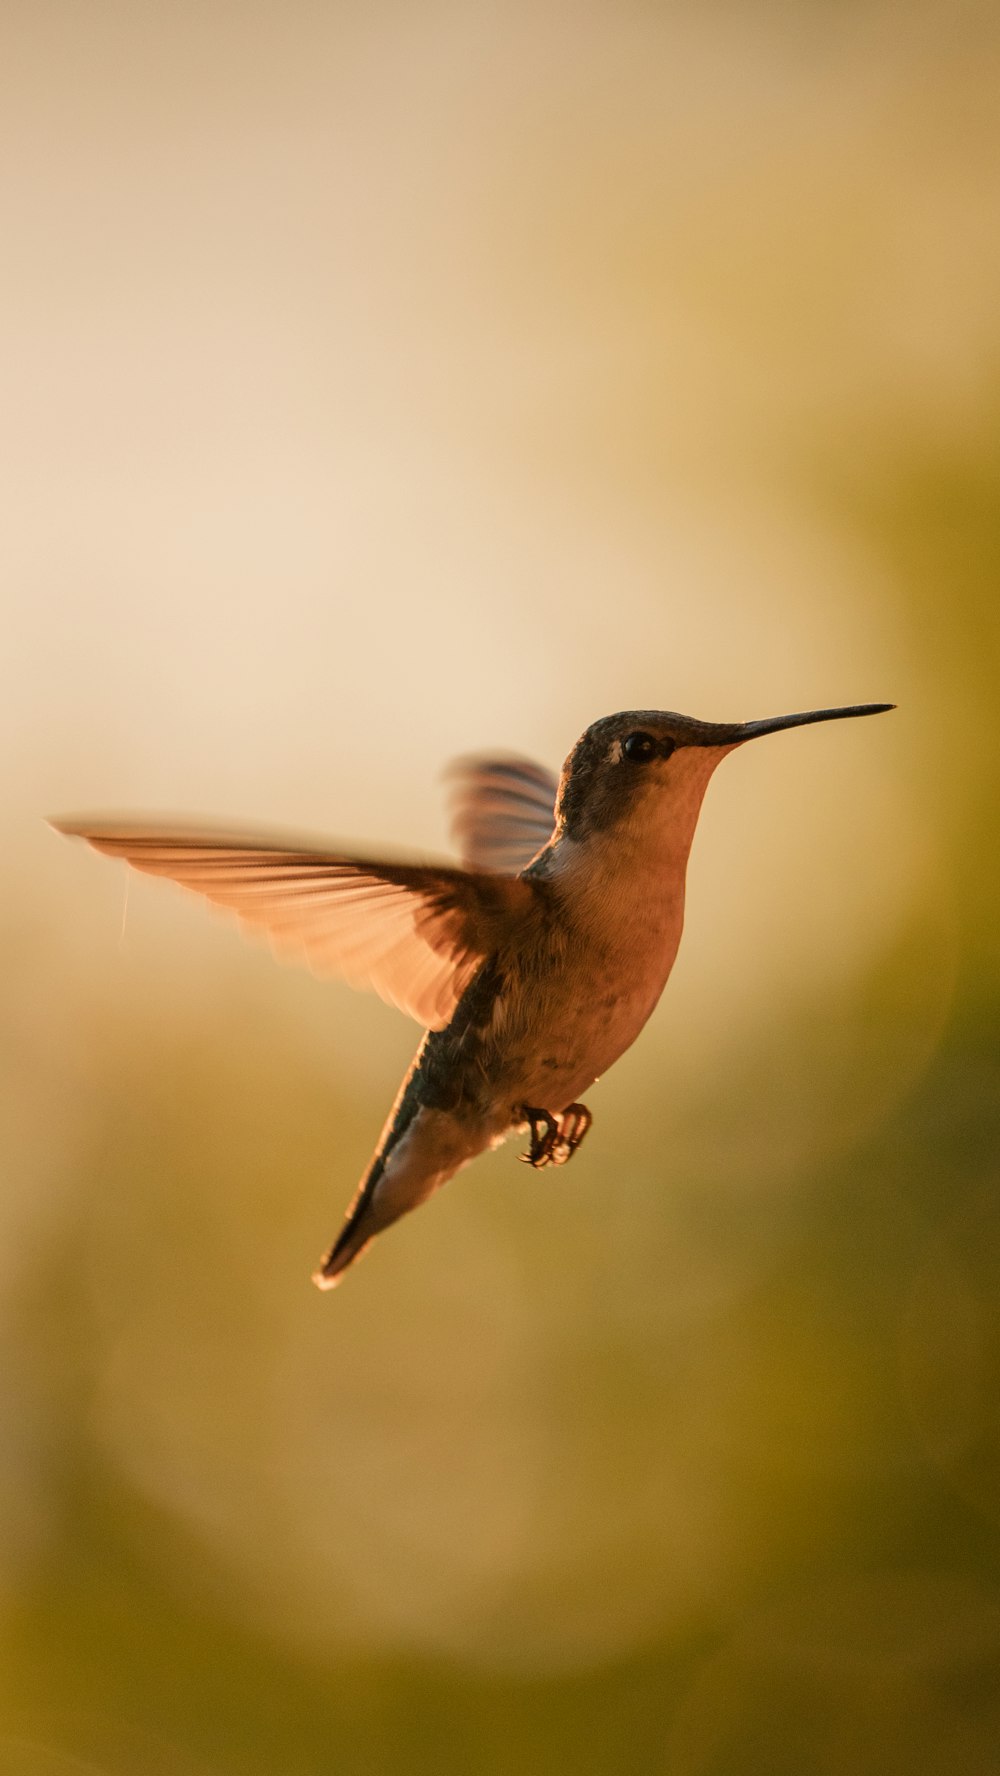 Brauner Kolibri fliegt in der Luft